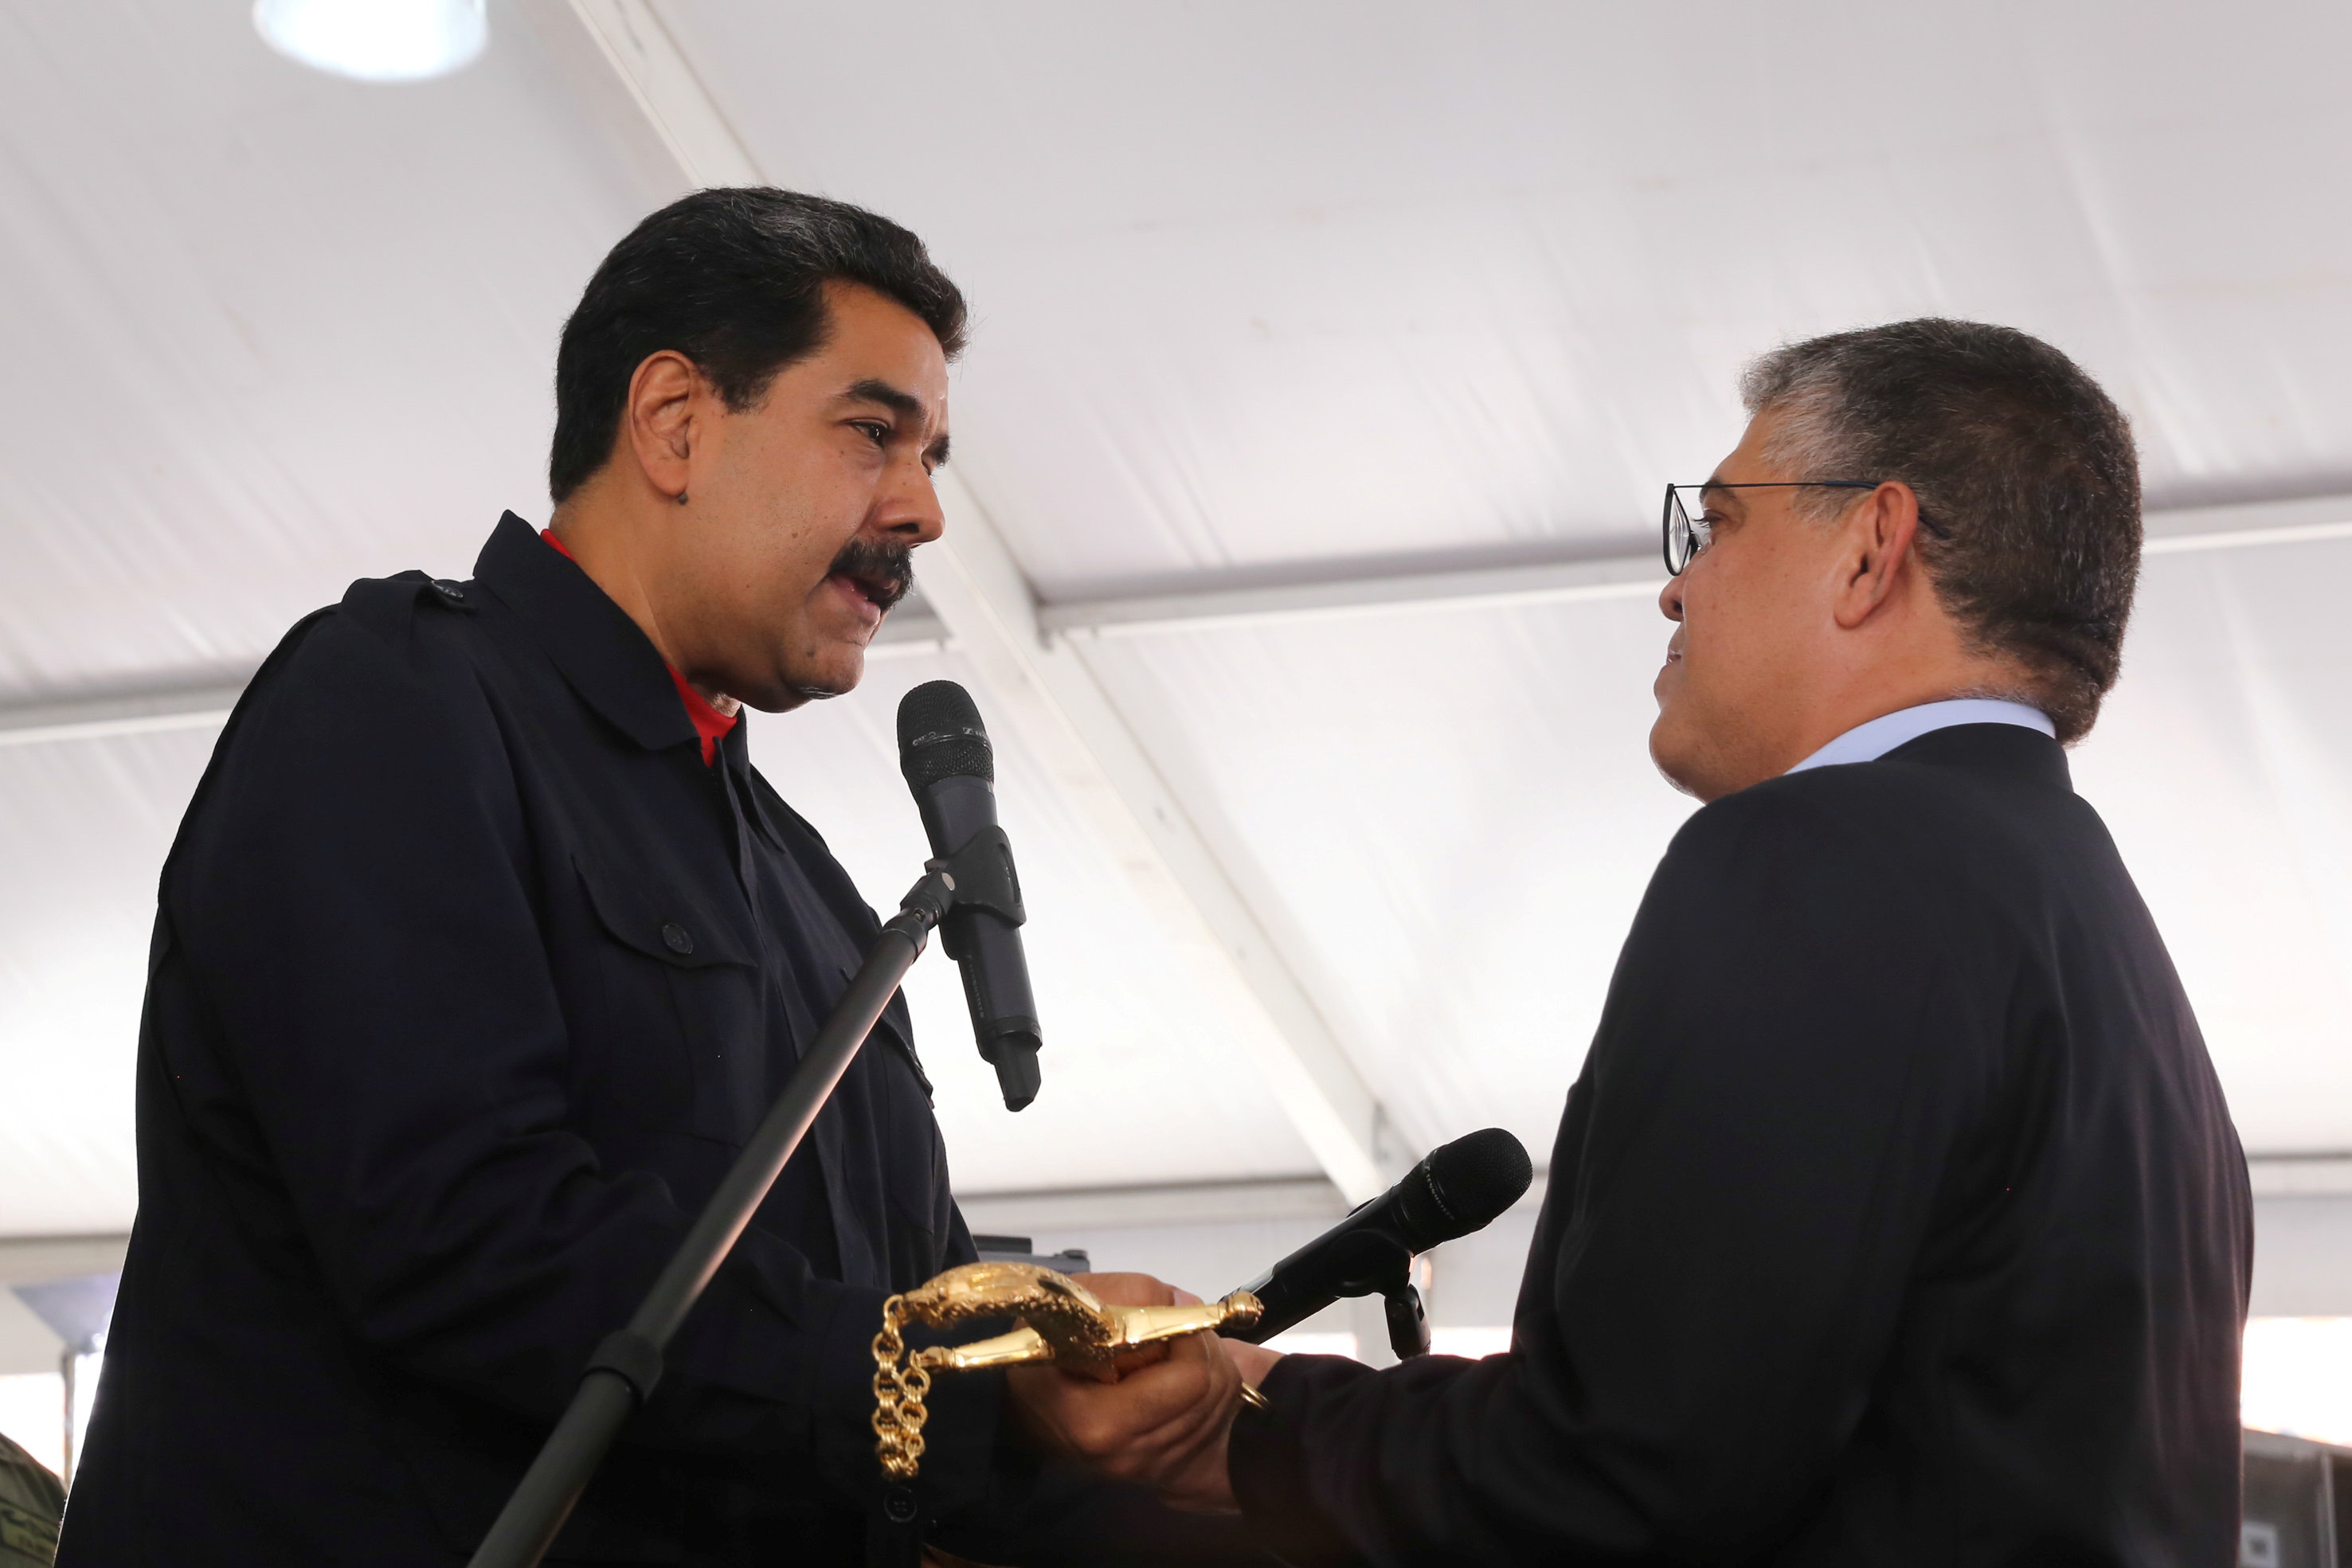 الرئيس الفنزويلى نيكولاس مادورو يصافح وزير التعليم ويعطيه سيف البطولة